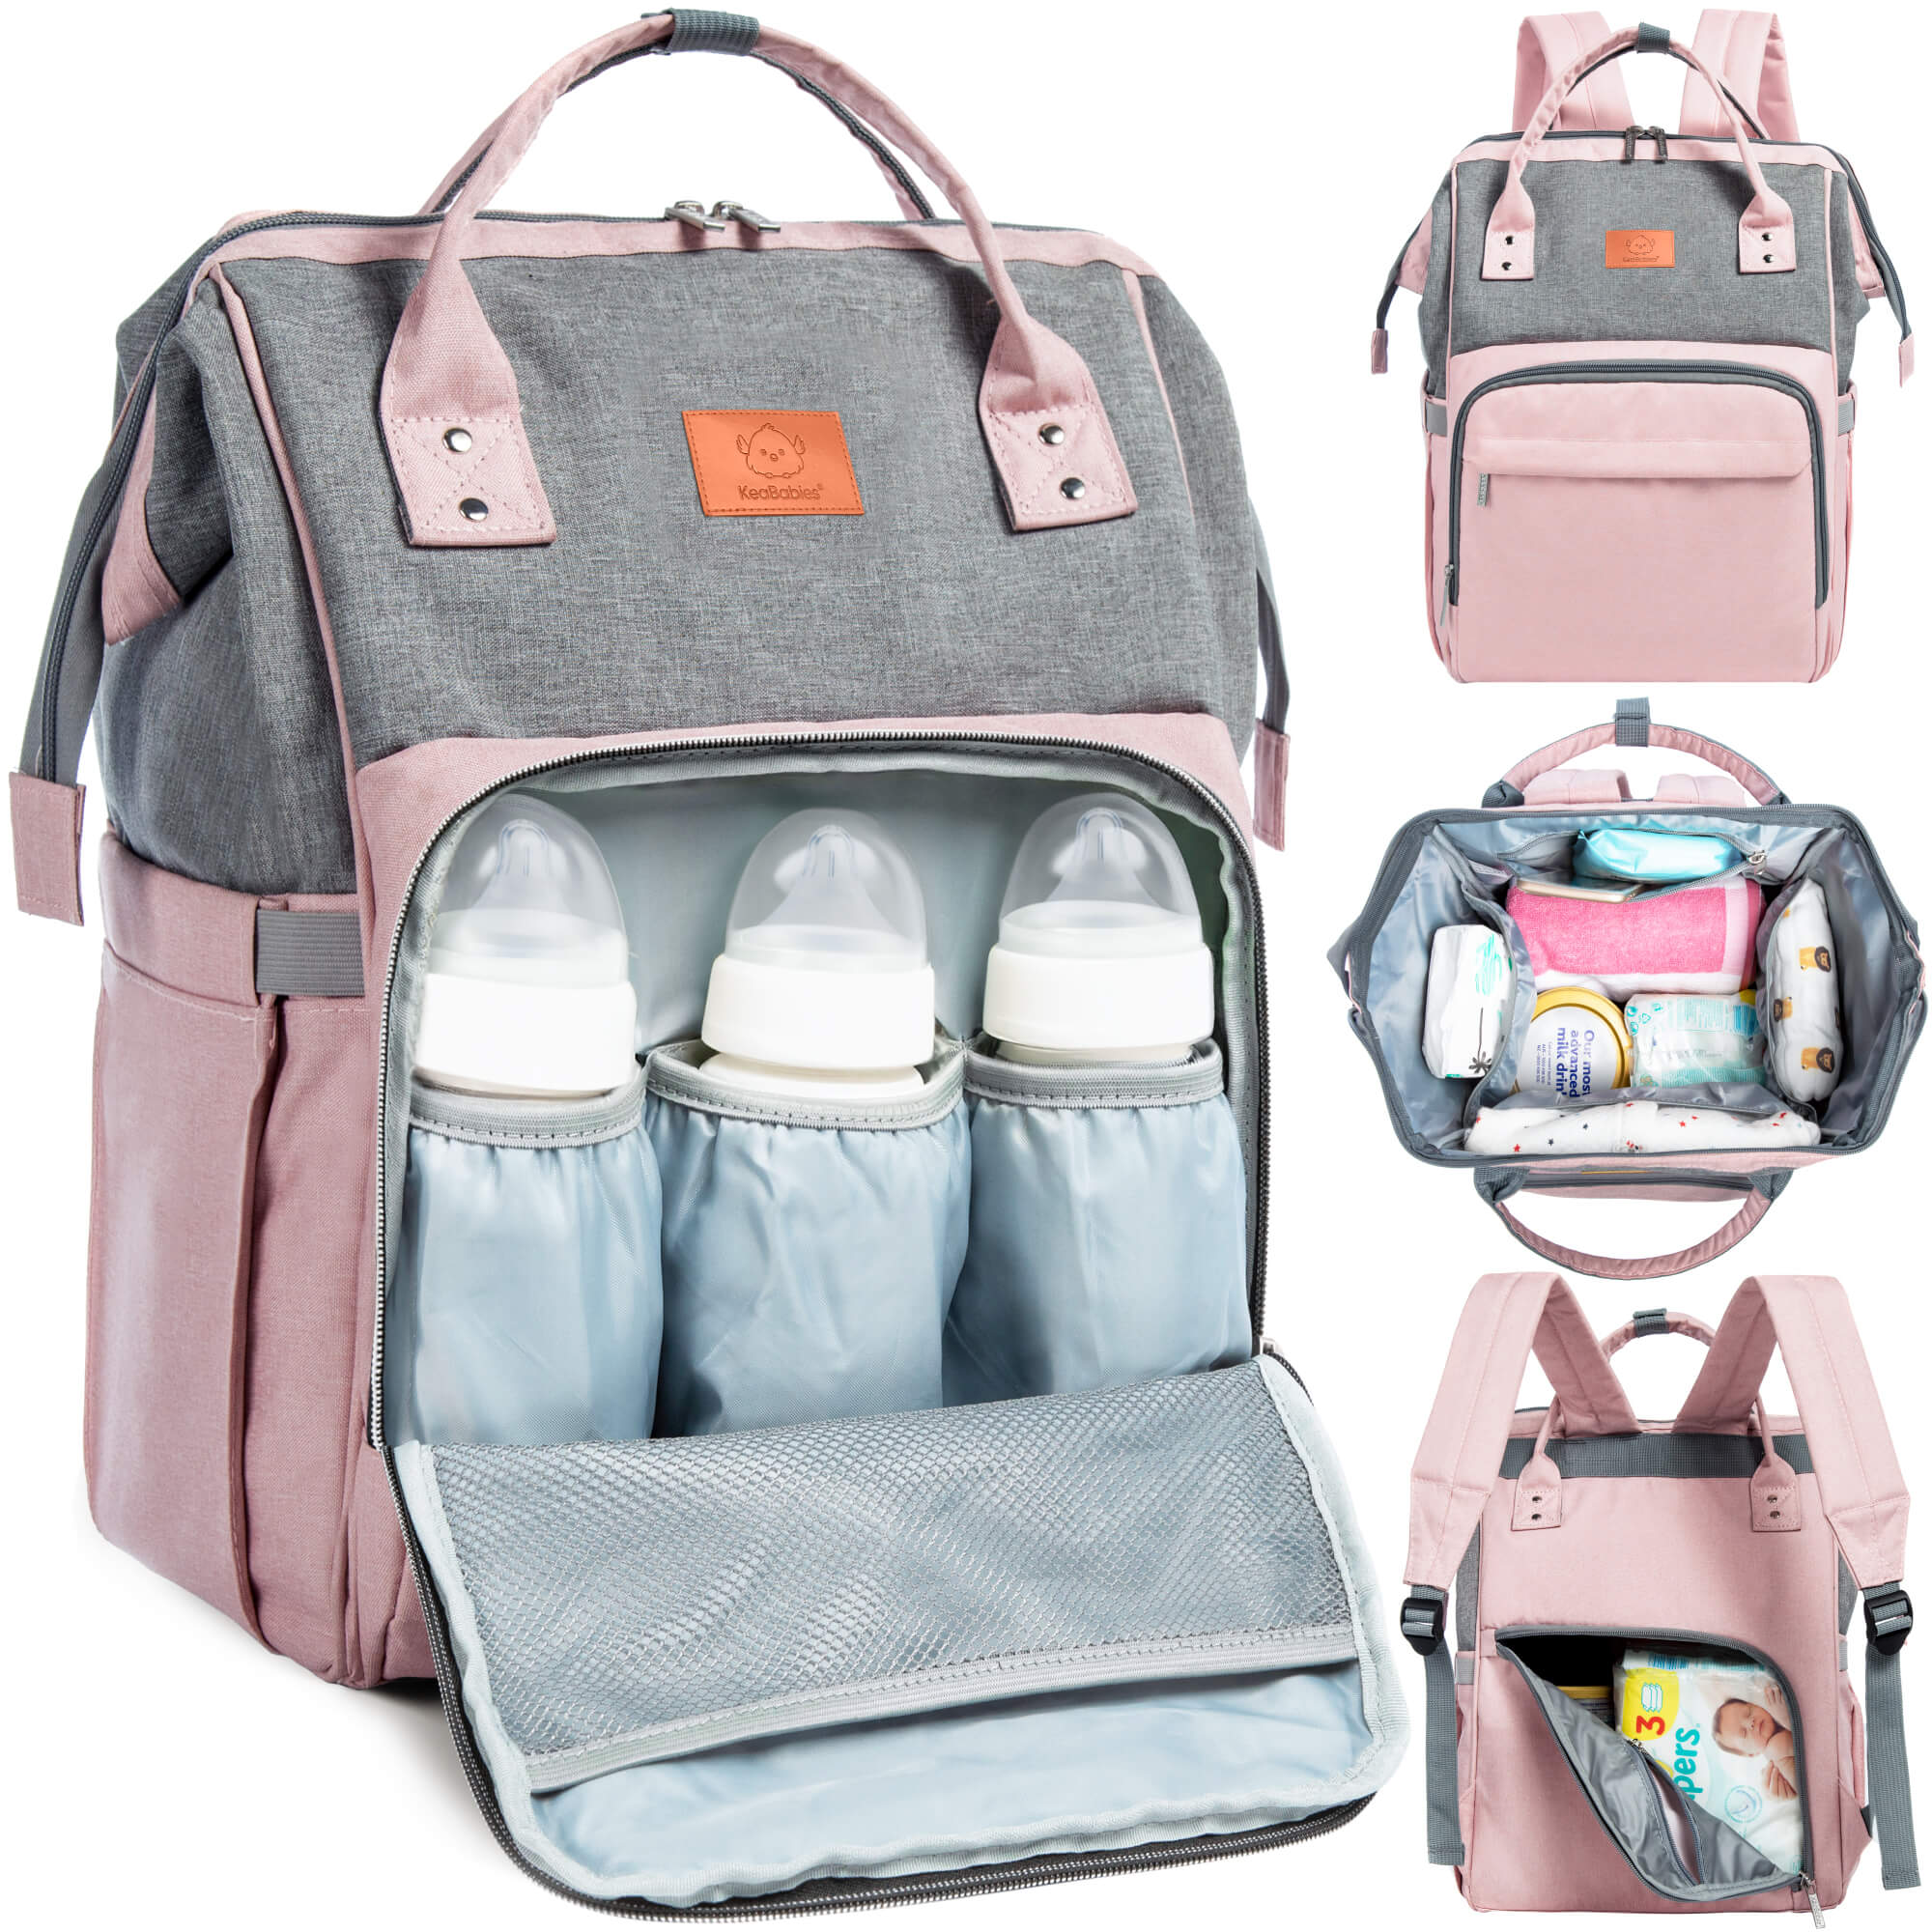 KeaBabies Original Diaper Bag/Backpack - Pink Gray